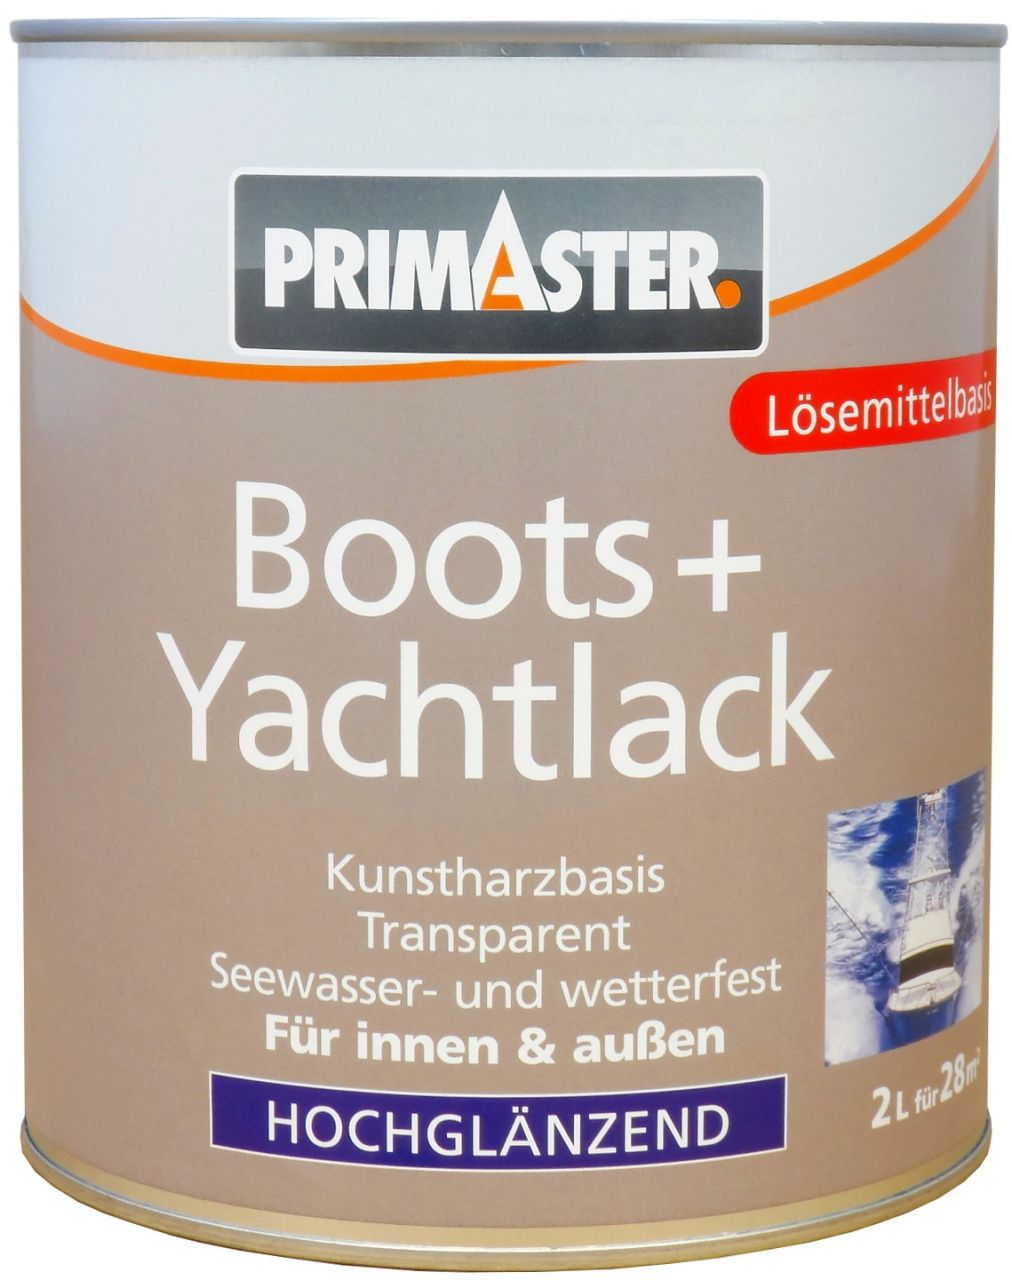 Primaster Boots+Yachtlack 2 L transparent hochglänzend von Primaster